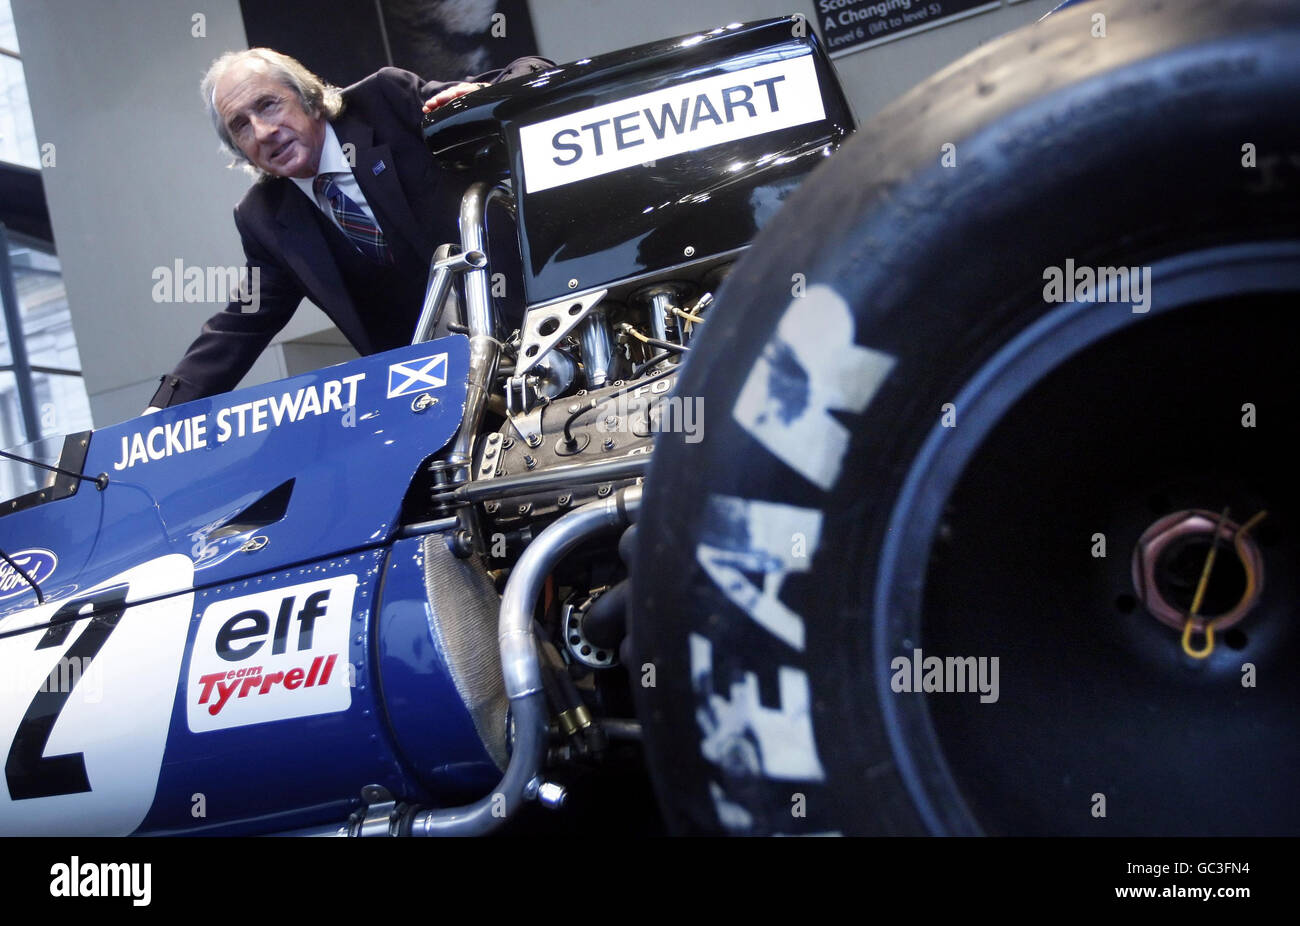 La leggenda della Formula 1 Sir Jackie Stewart rivela la sua auto Tyrrell 003 del 1971, parte di una nuova mostra al National Museum of Scotland di Edimburgo per celebrare il 40° anniversario della sua prima vittoria mondiale dei piloti. Foto Stock